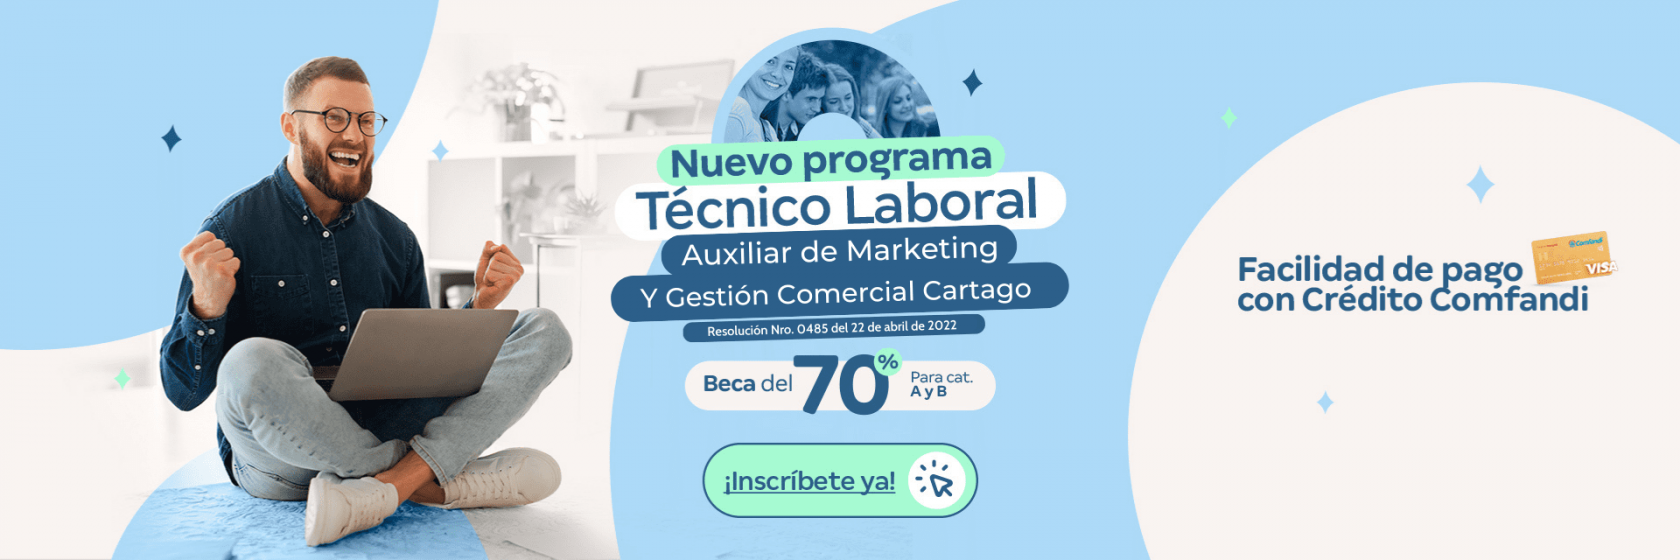 Técnico Laboral por Competencias en Marketing y Gestión Comercial - Cartago  